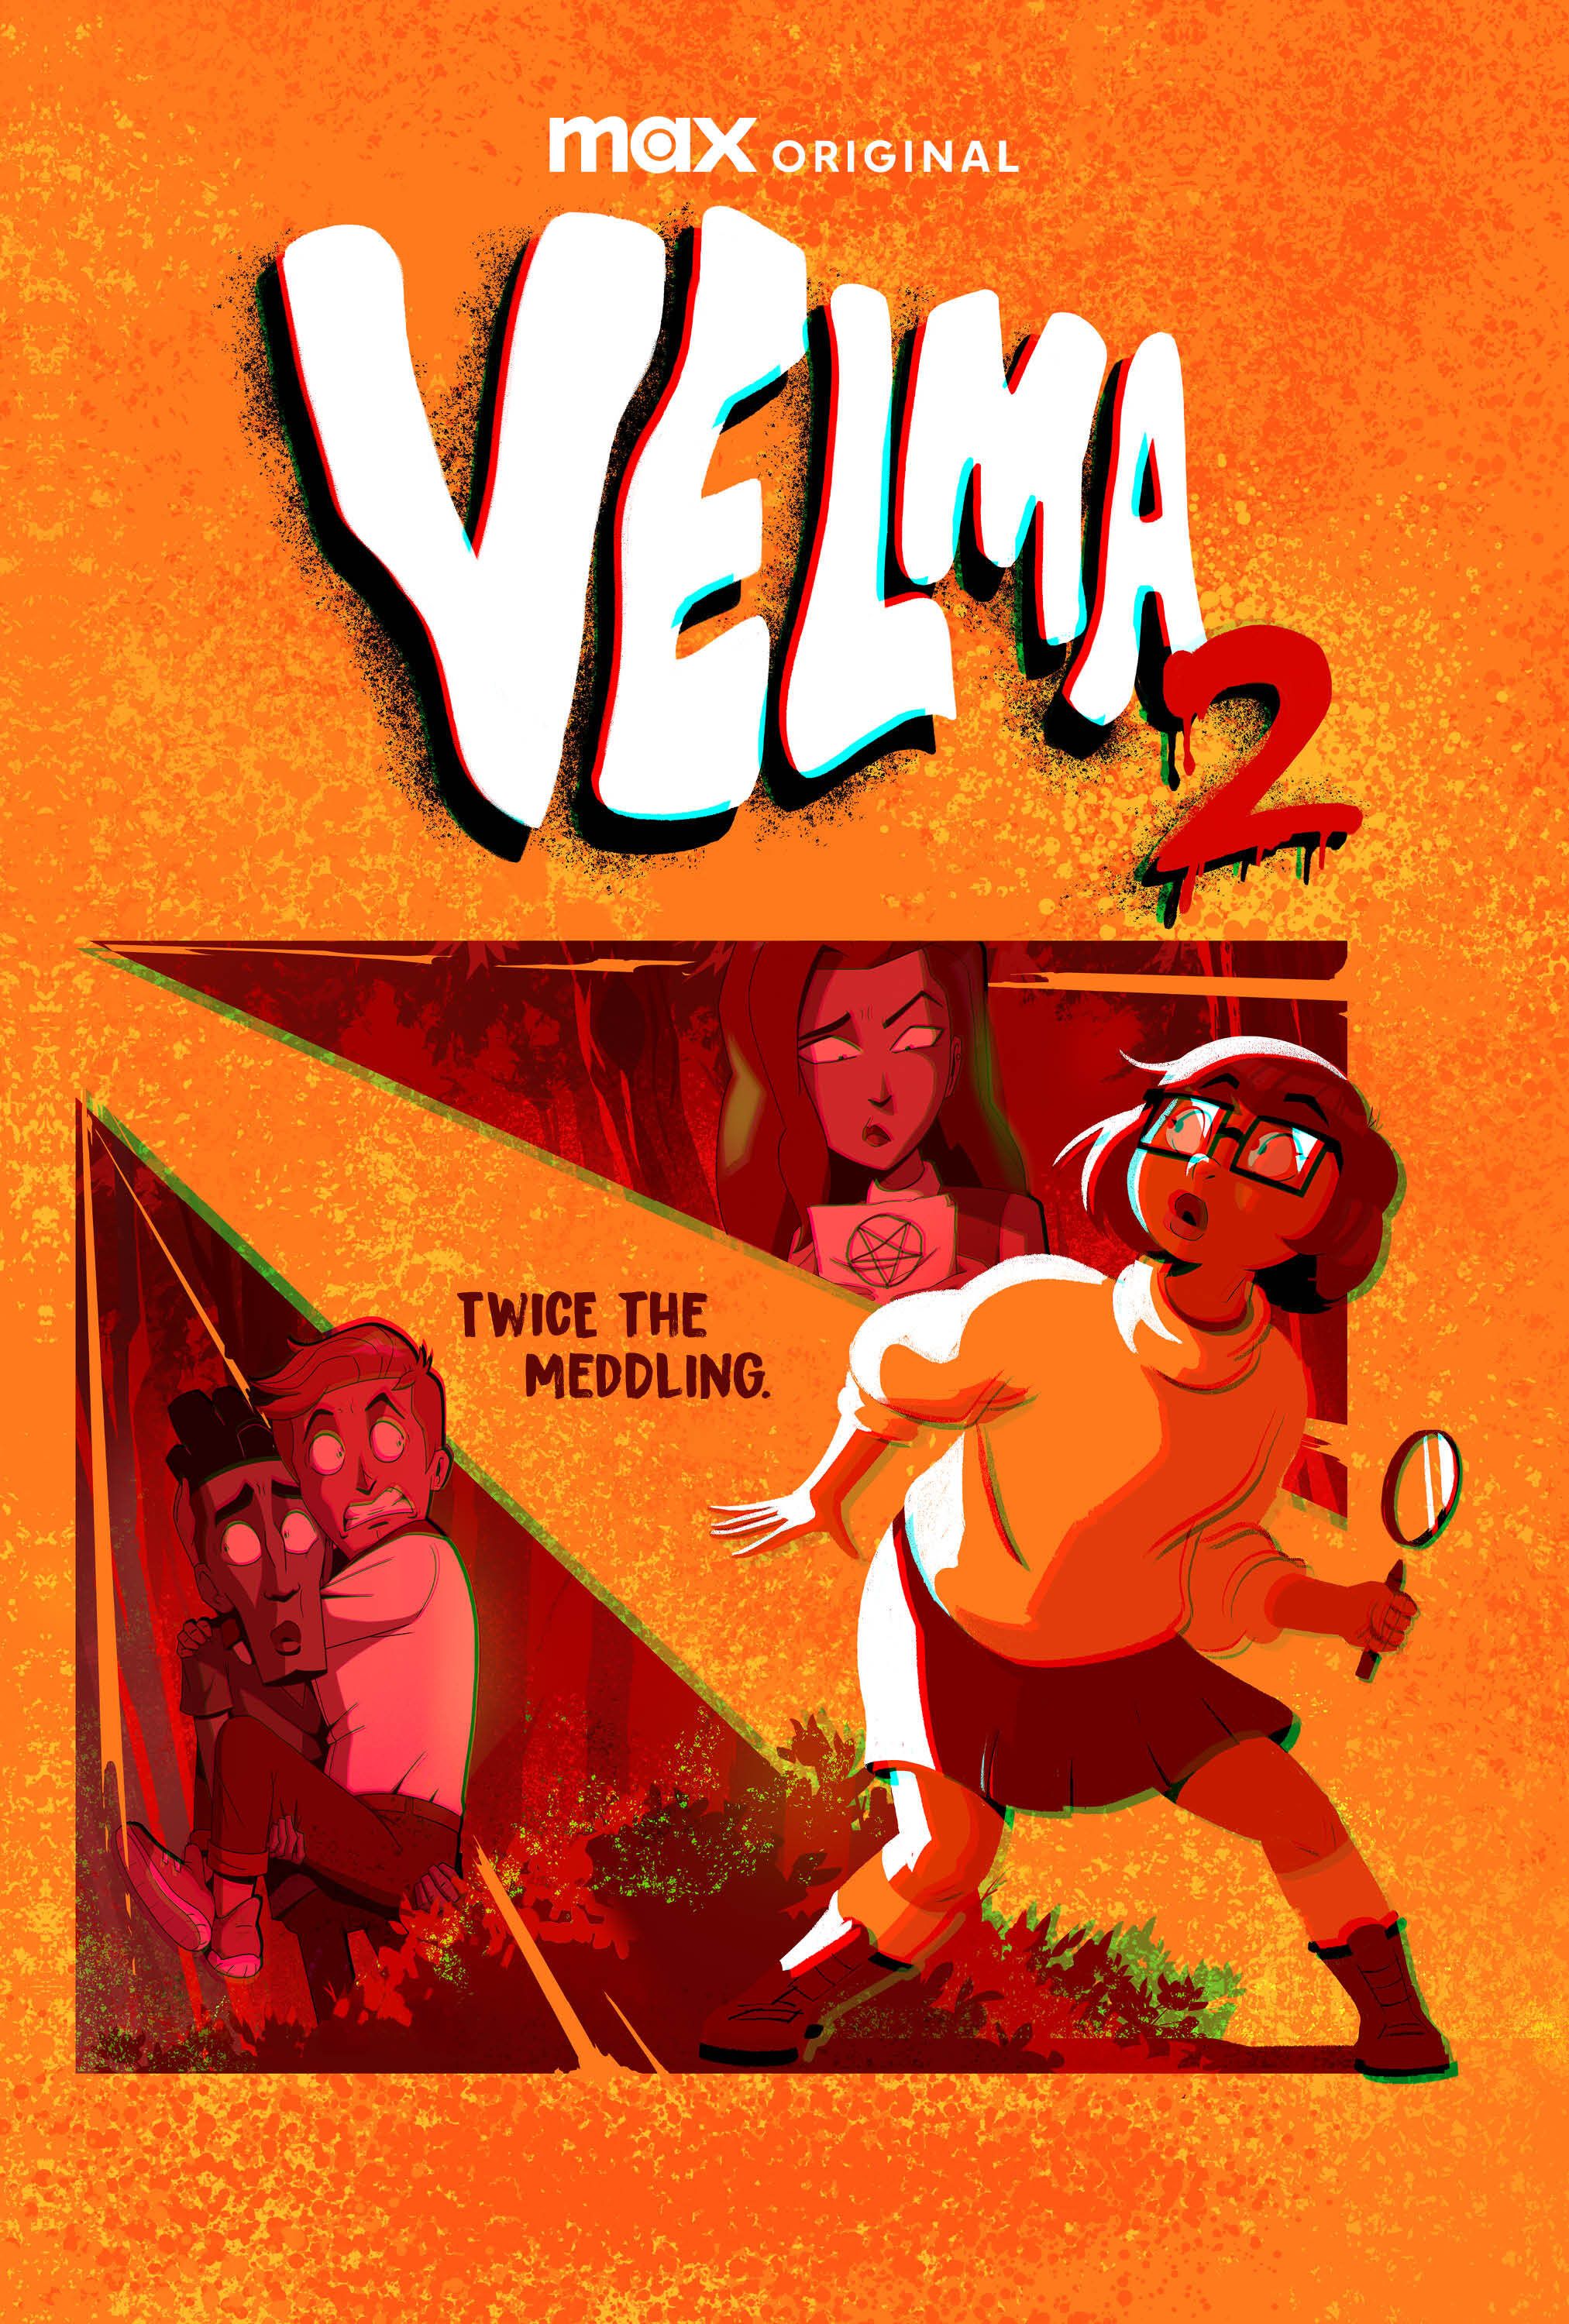 Pôster da 2ª temporada de Velma mostrando Velma segurando uma lupa